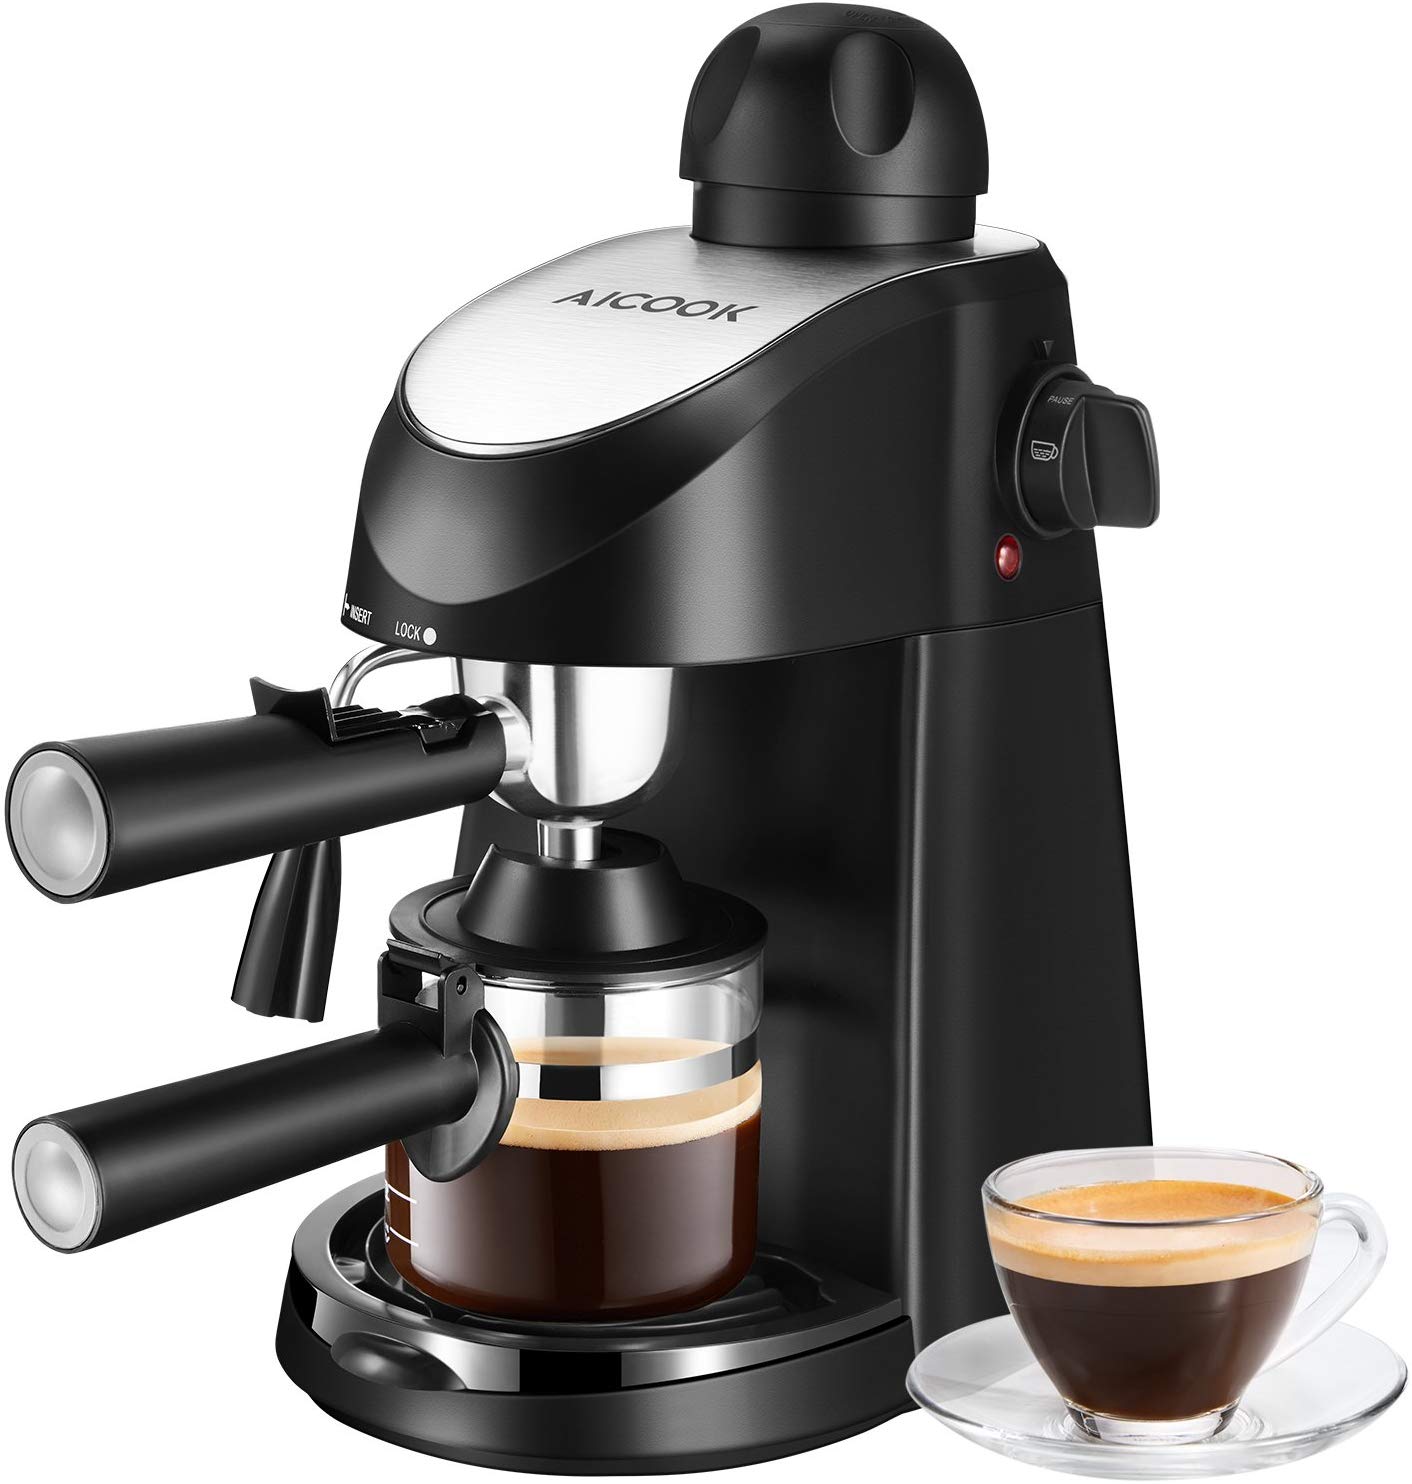 Espresso Machine, Aicook 3.5Bar Espresso Coffee Maker, Espresso and Cappuccino Machine with Milk Frother, Espresso Maker with Steamer, Black